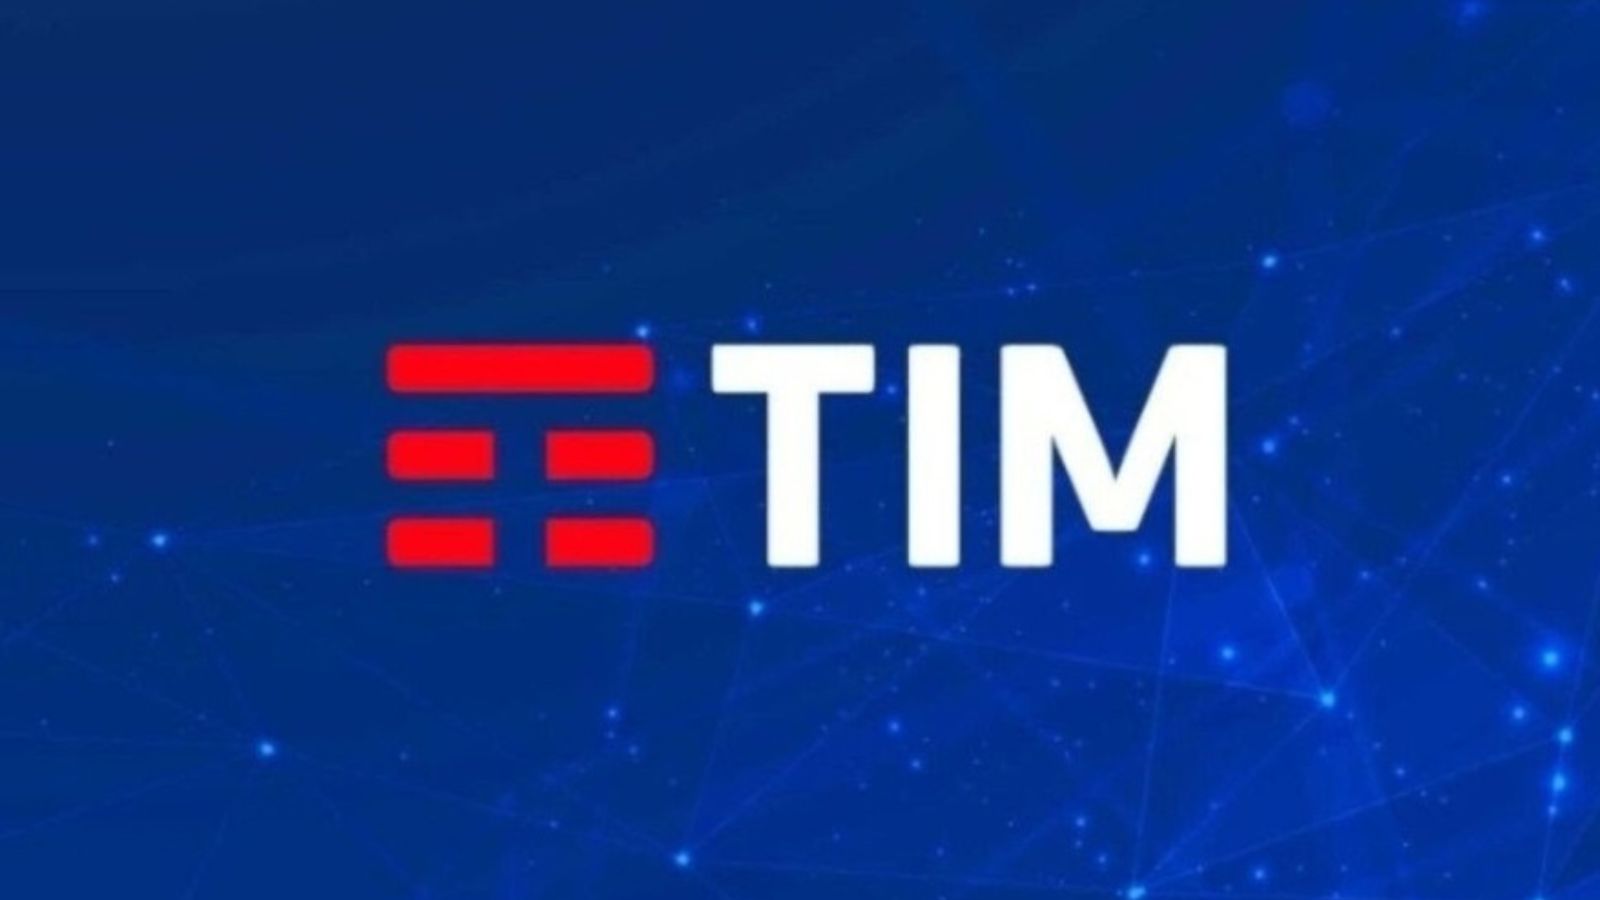 Tim special New offerta 300 gb 